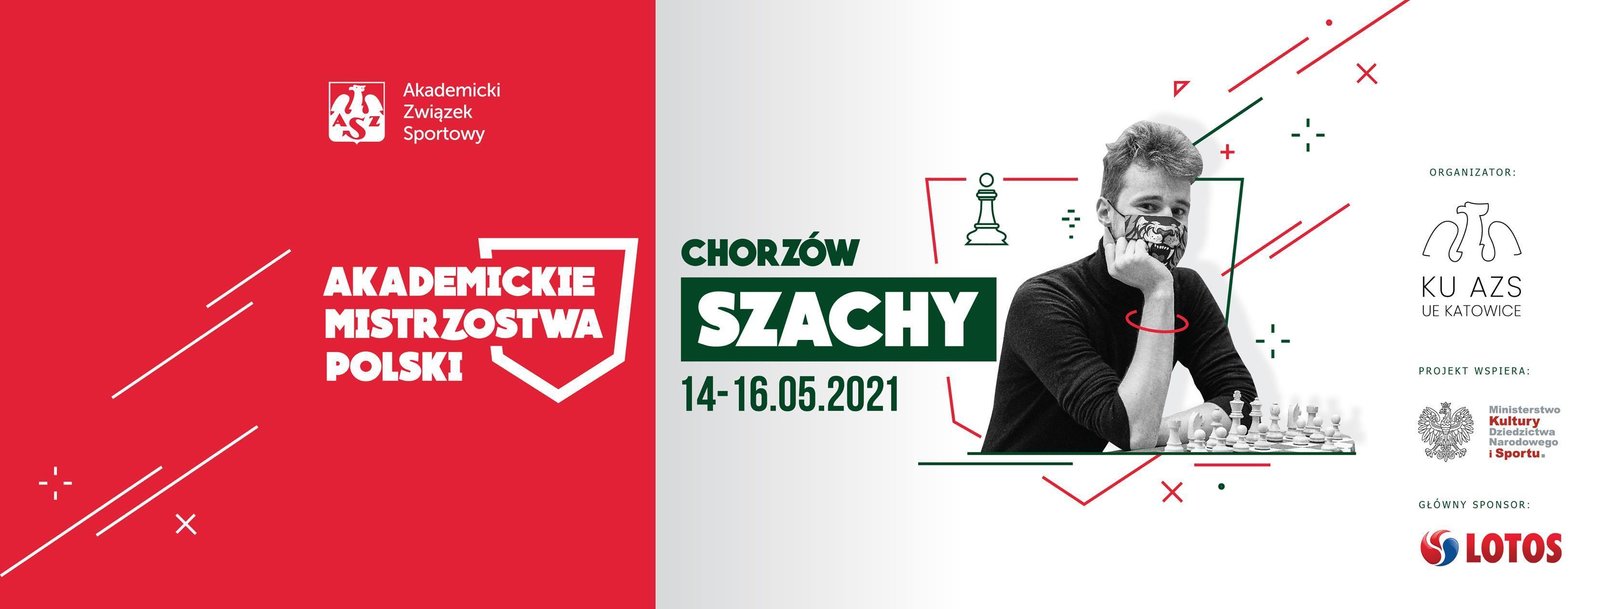 Akademickie Mistrzostwa Polski w Szachach (14-16.05.2021)